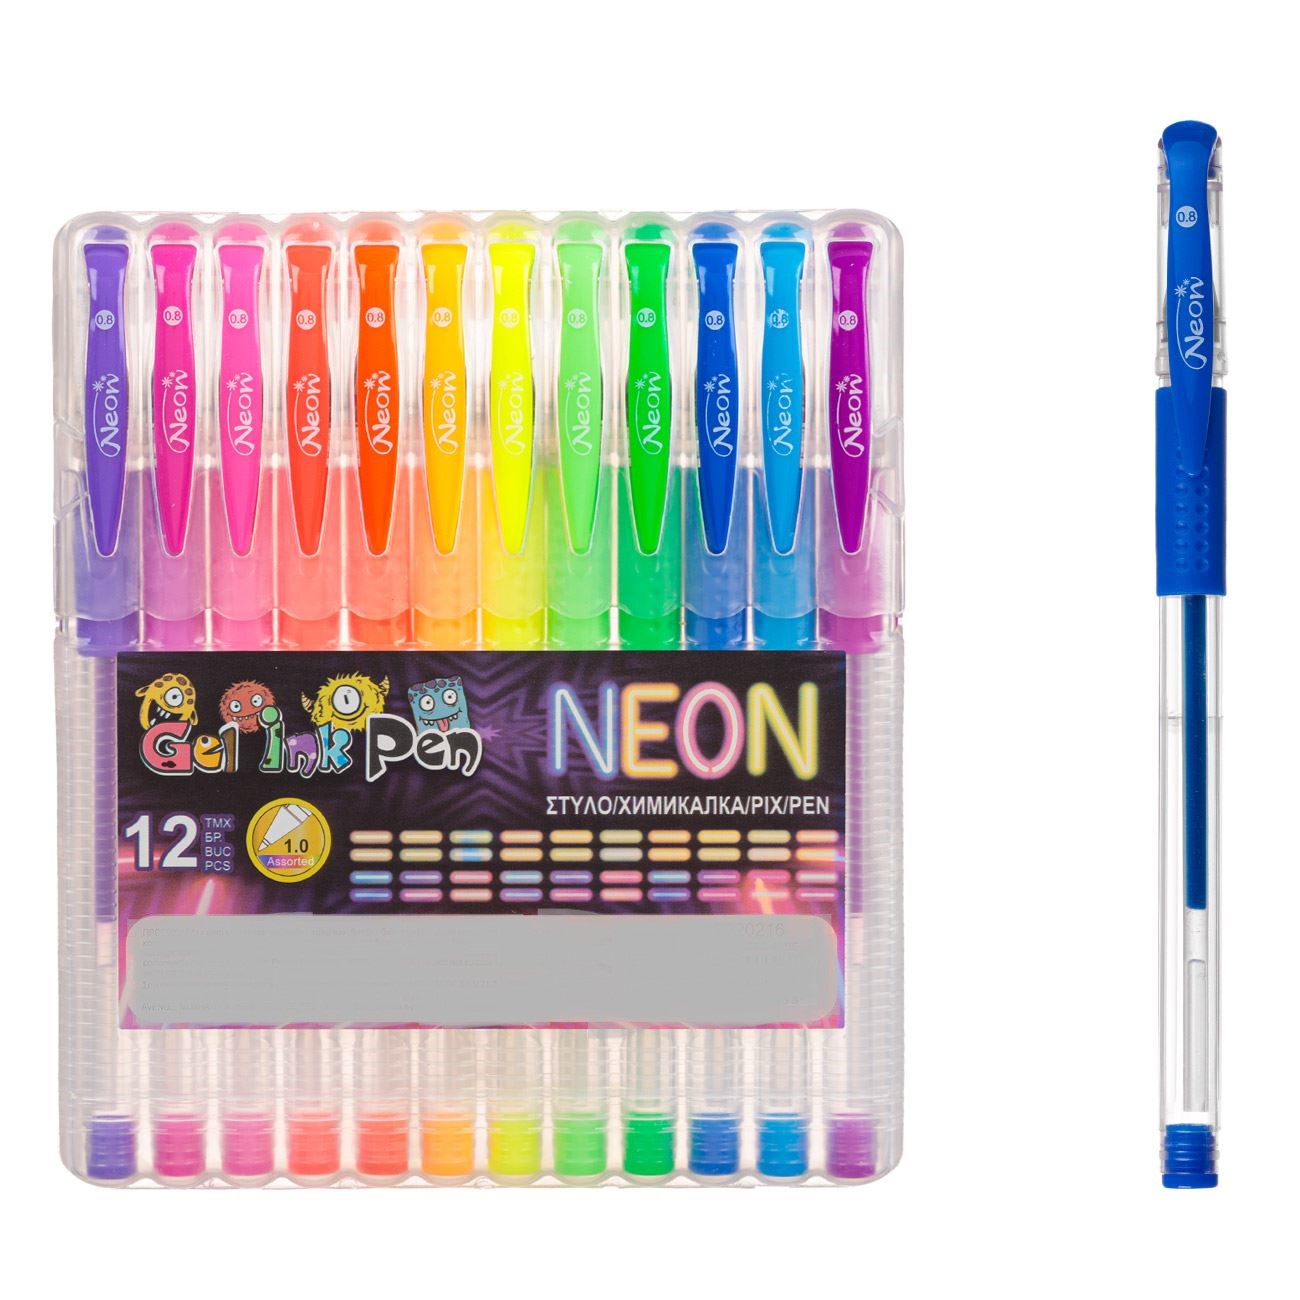 Neon színű zselés toll készlet 12 db-os